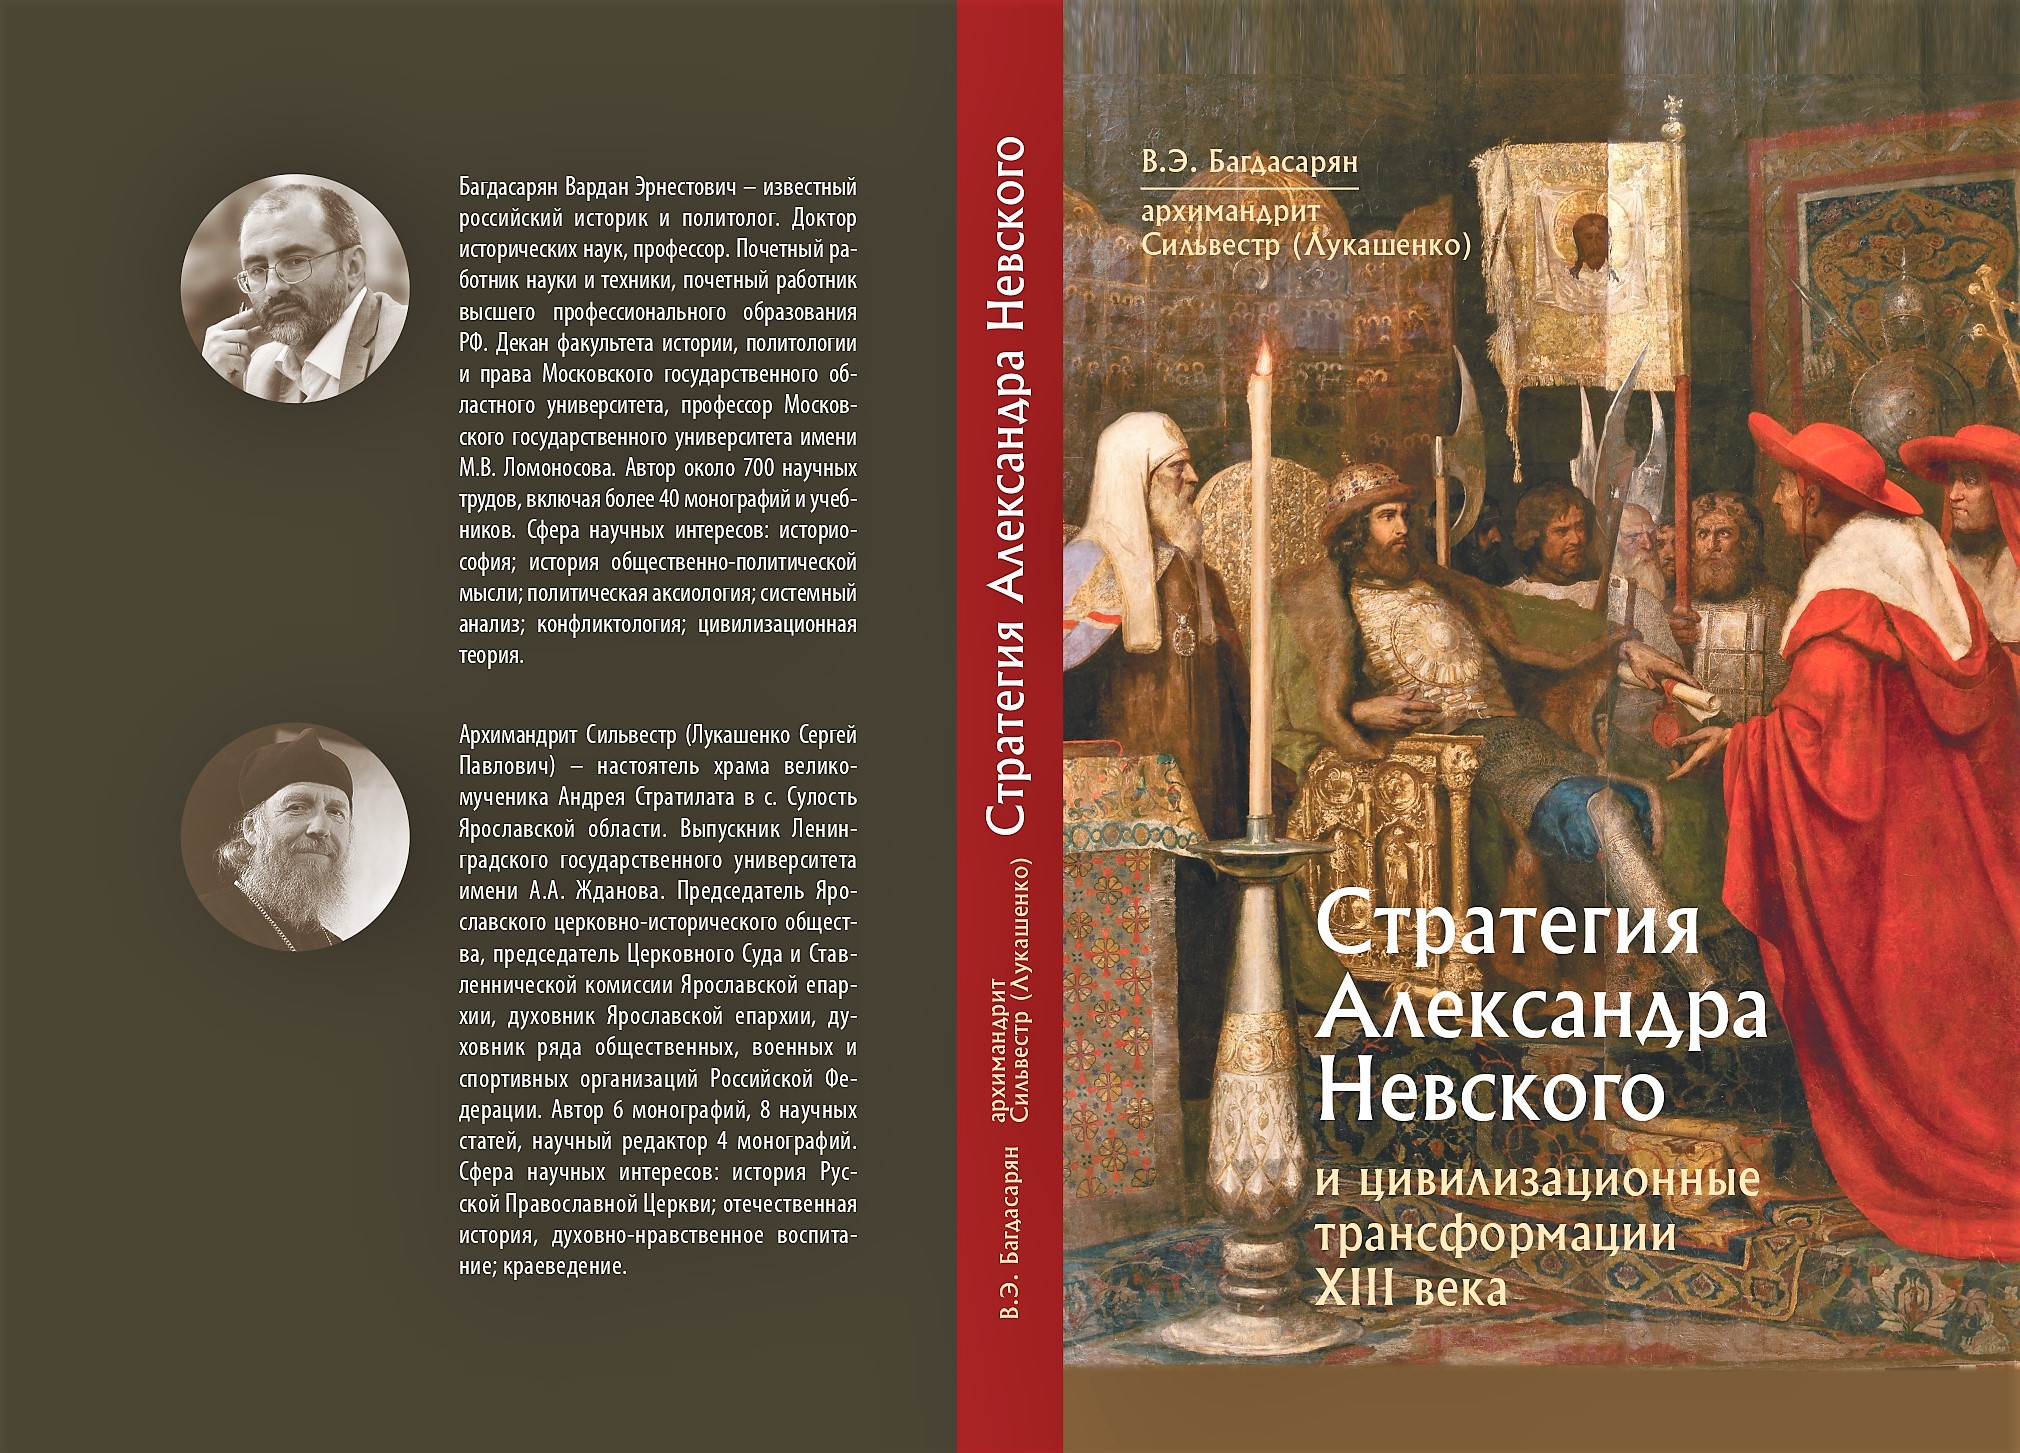 Strategiya Aleksandra Nevskogo (Cover)_page-0001.jpg